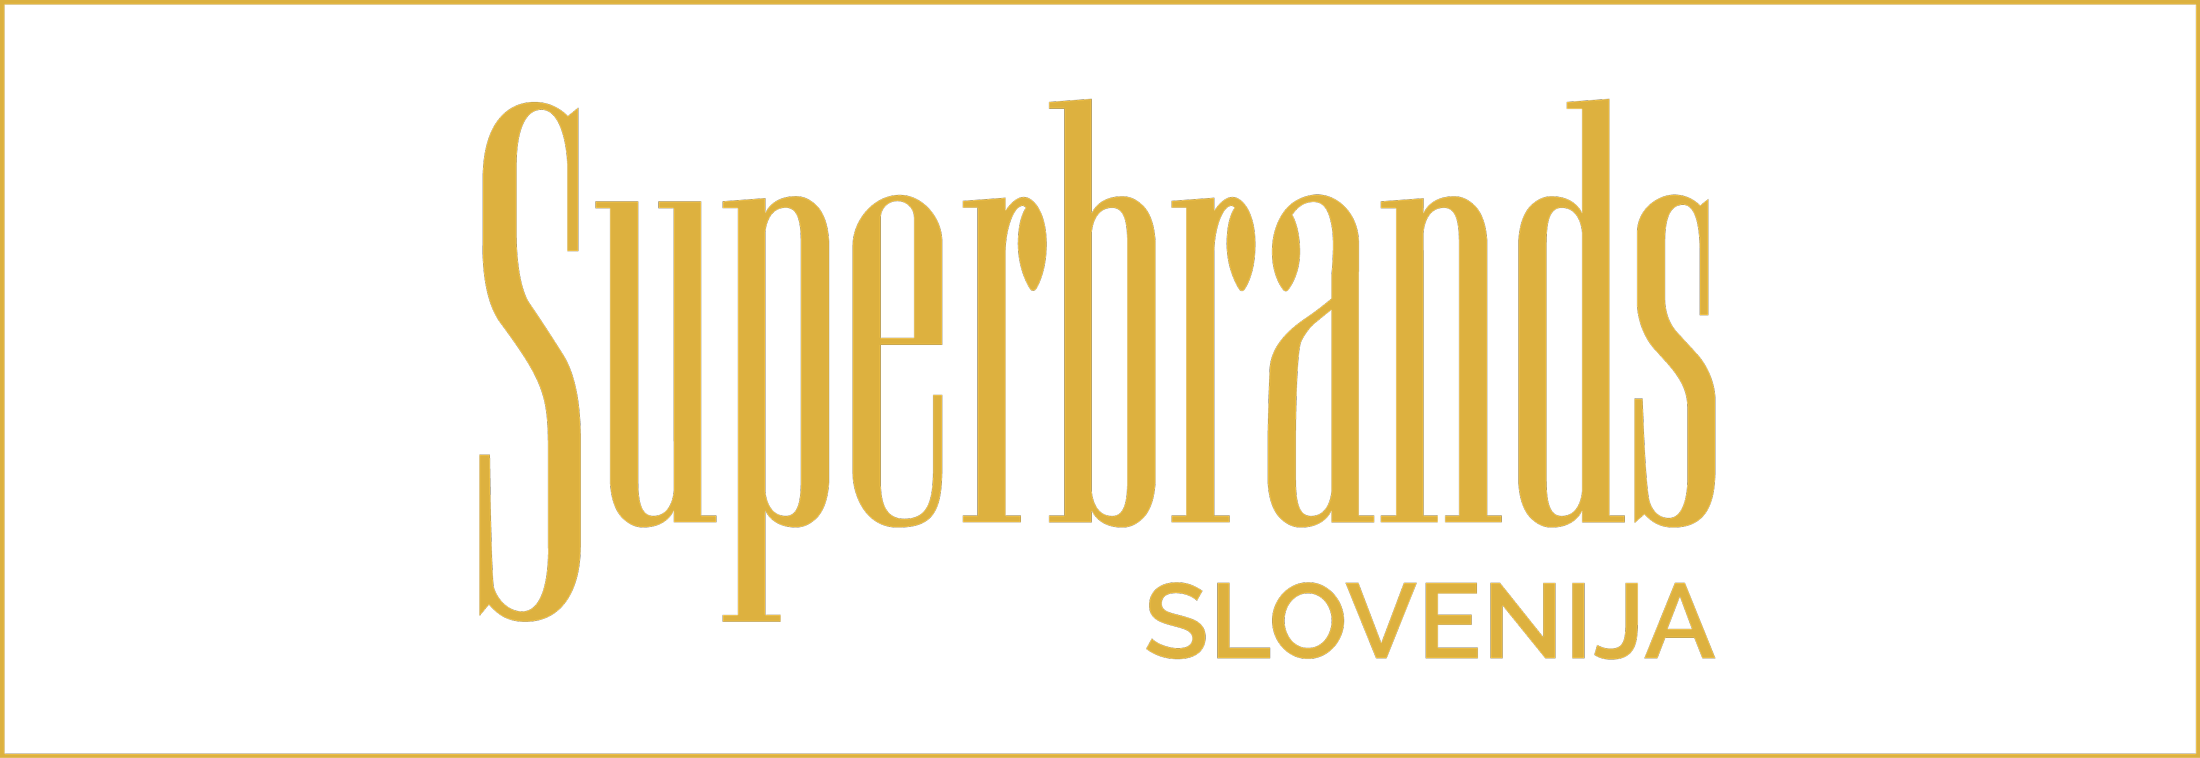 Superbrands Slovenija